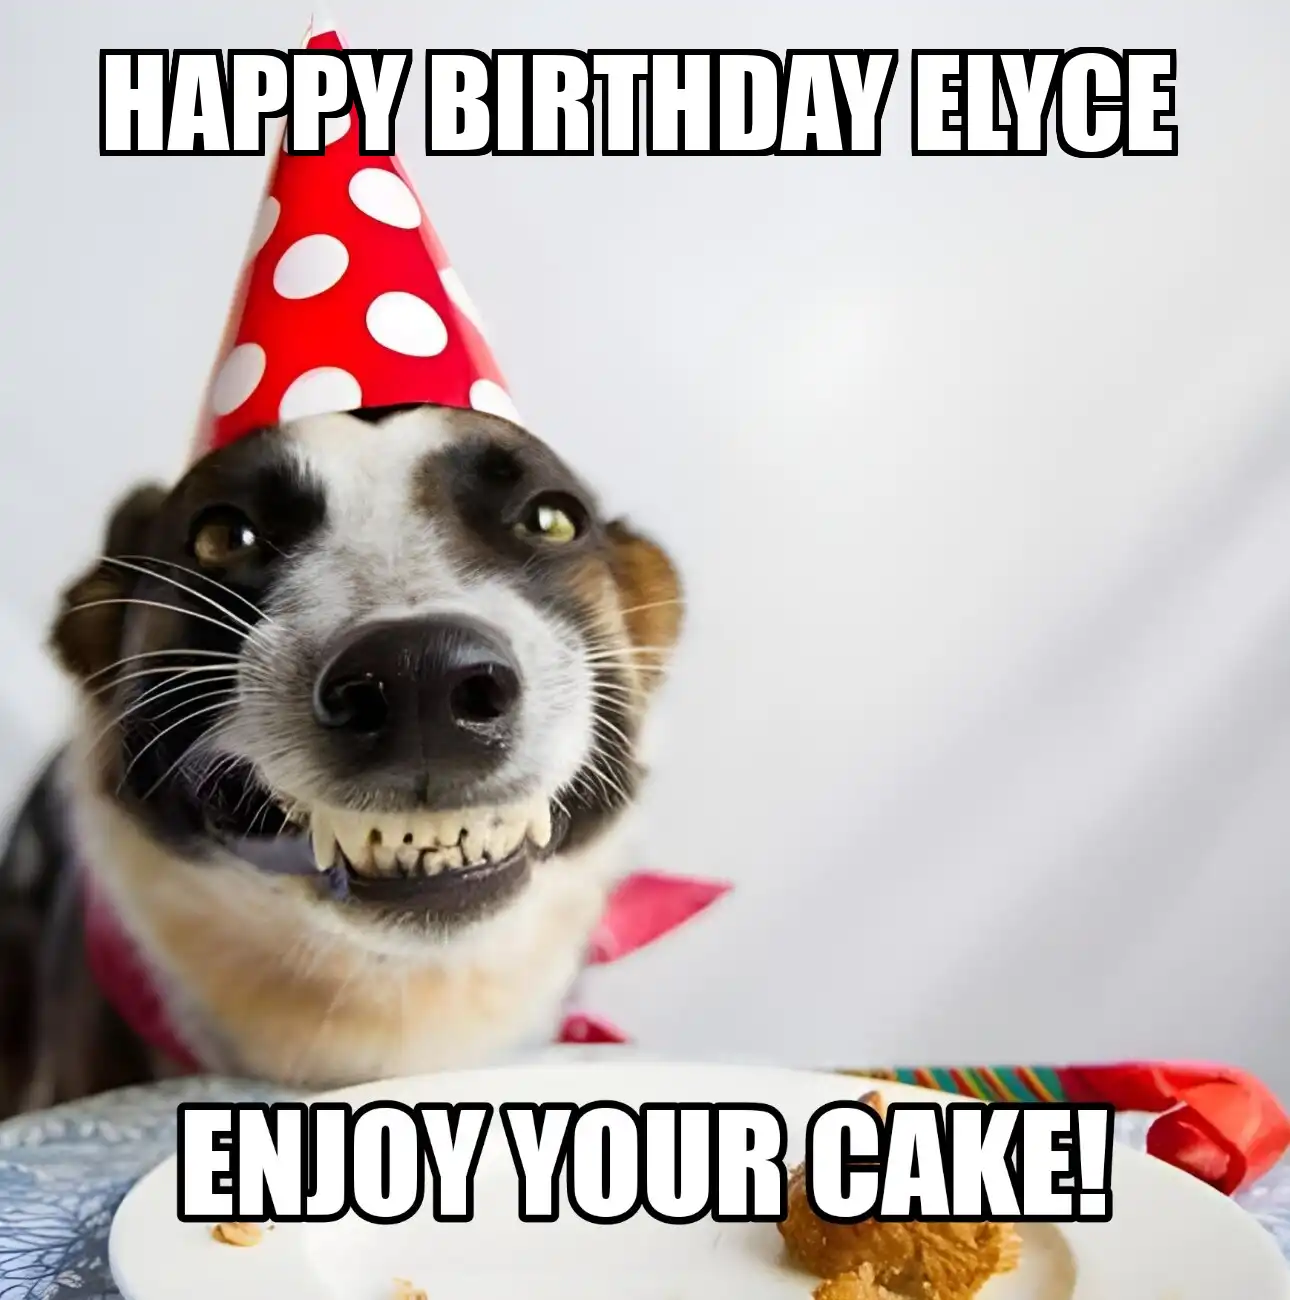 Happy Birthday Elyce Enjoy Your Cake Dog Meme